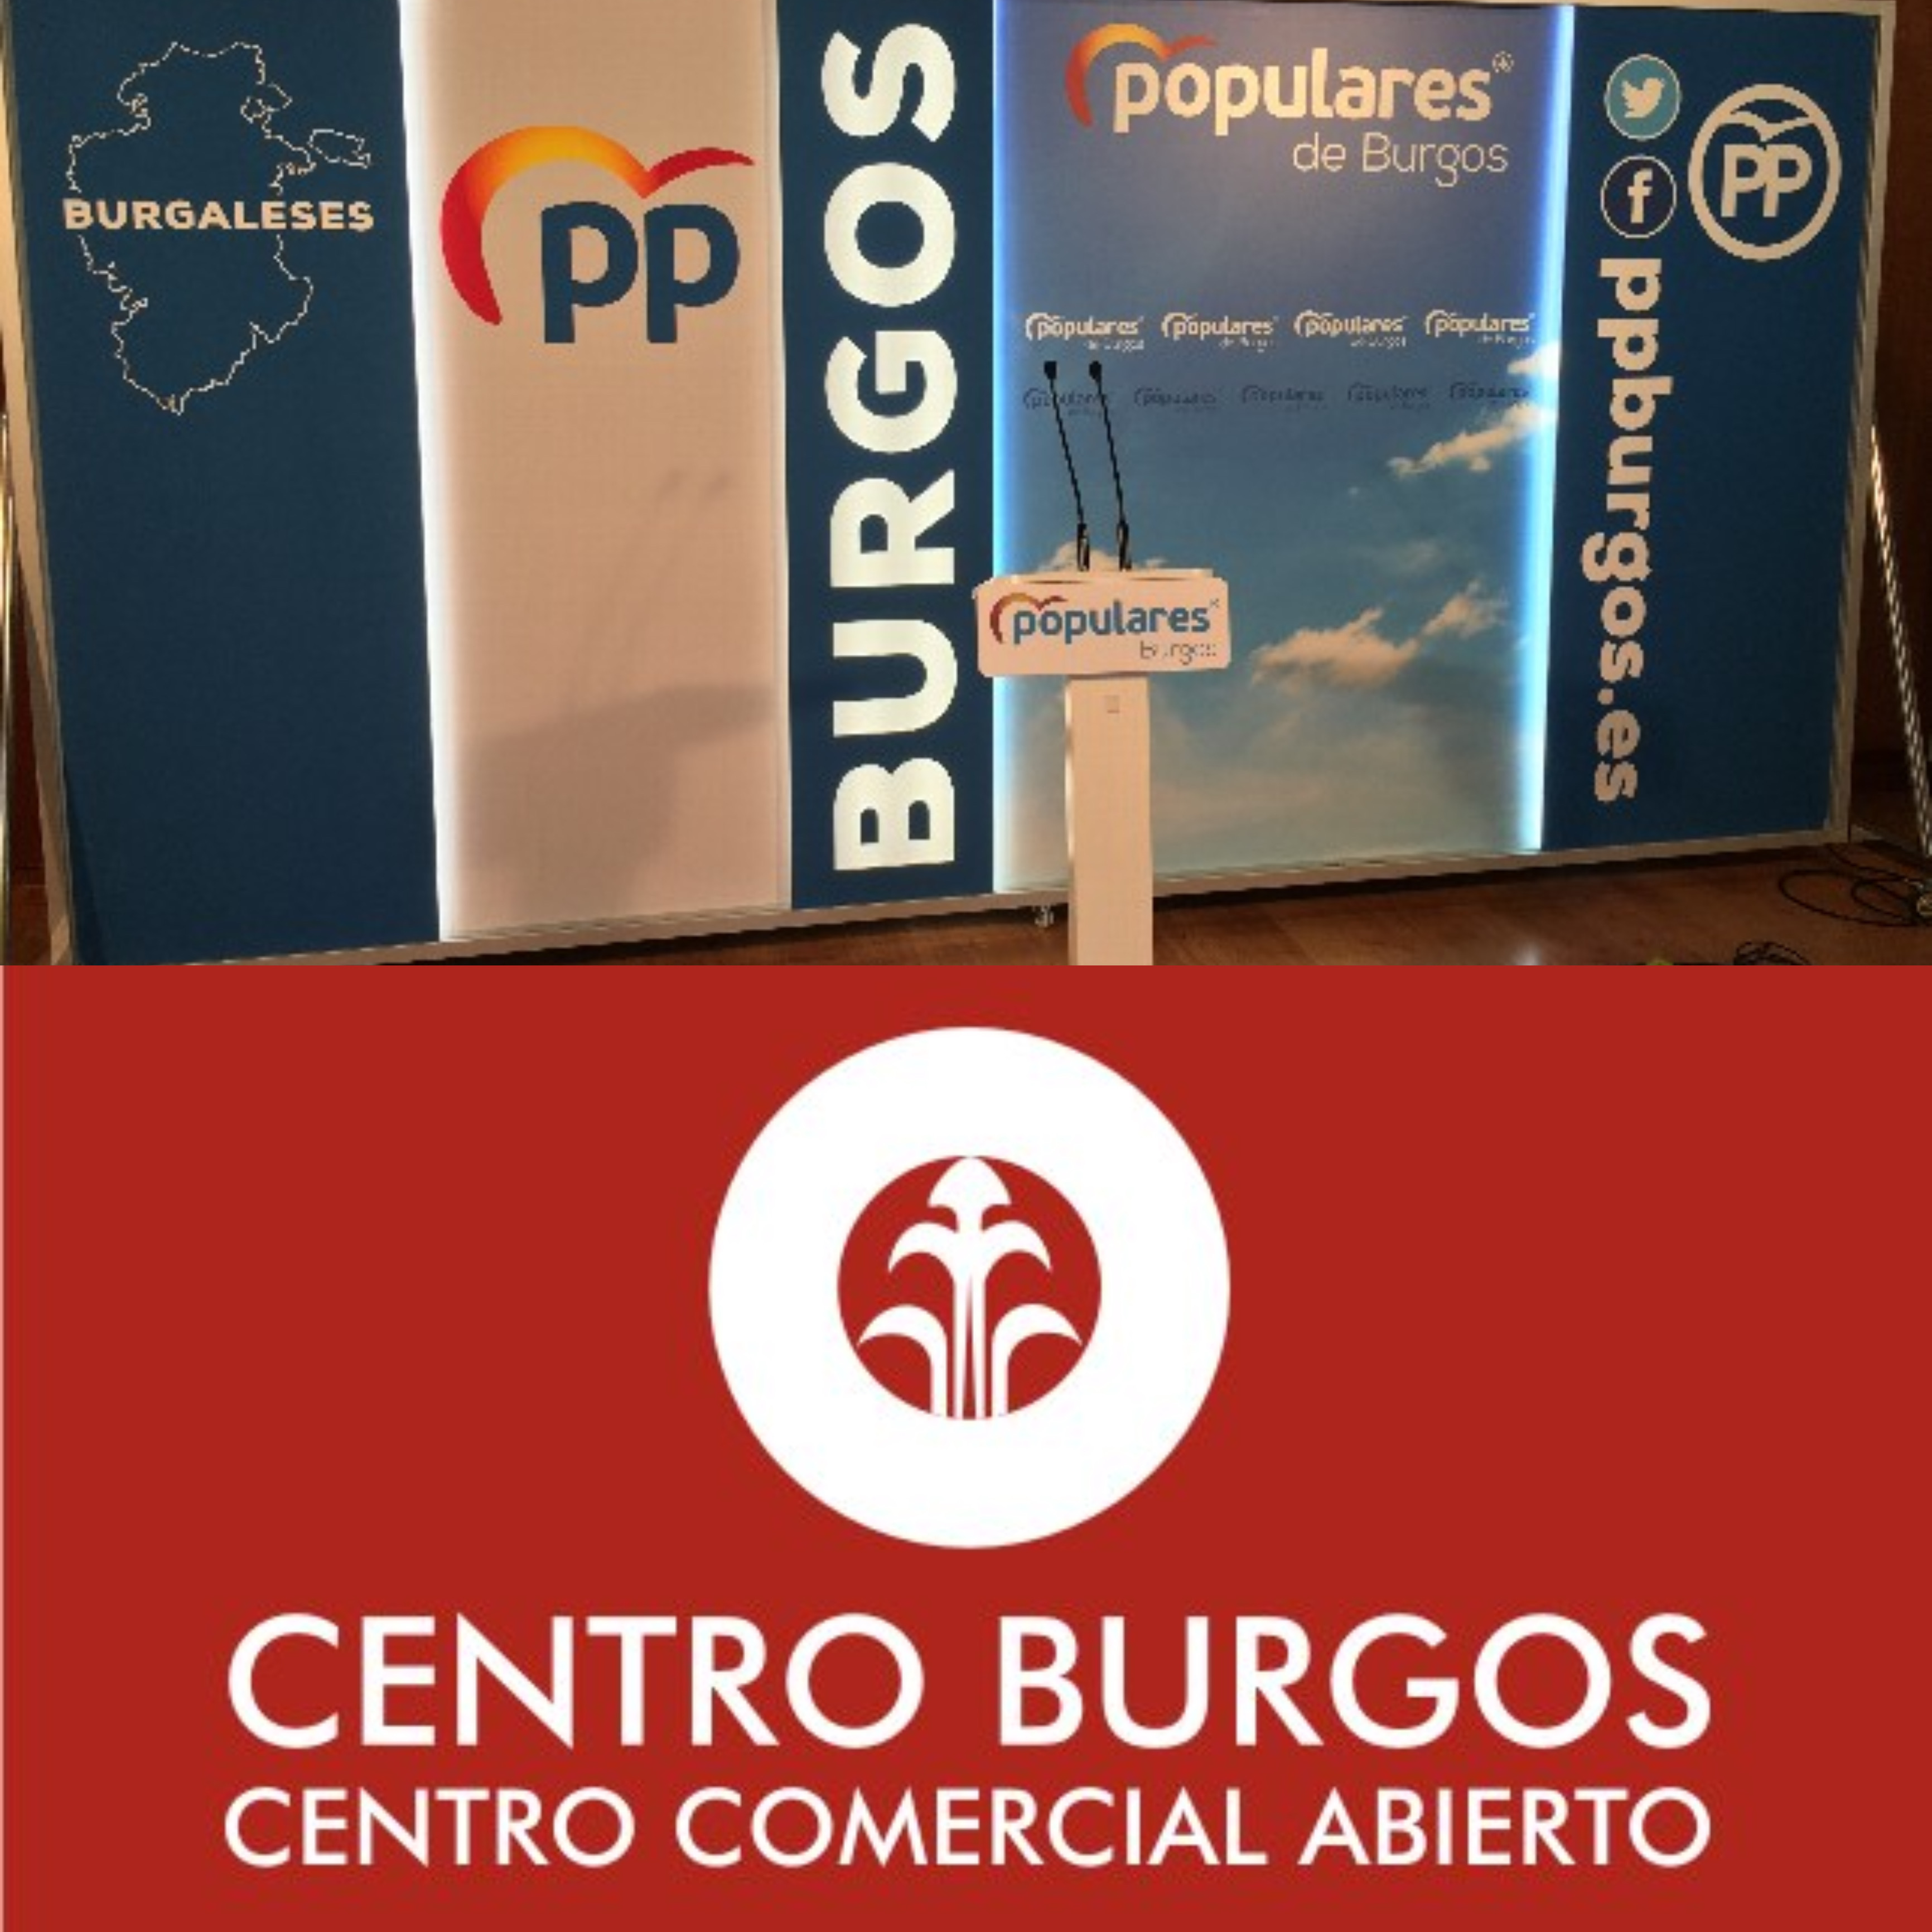 Centro Burgos Centro Comercial Abierto ft. Sede PP